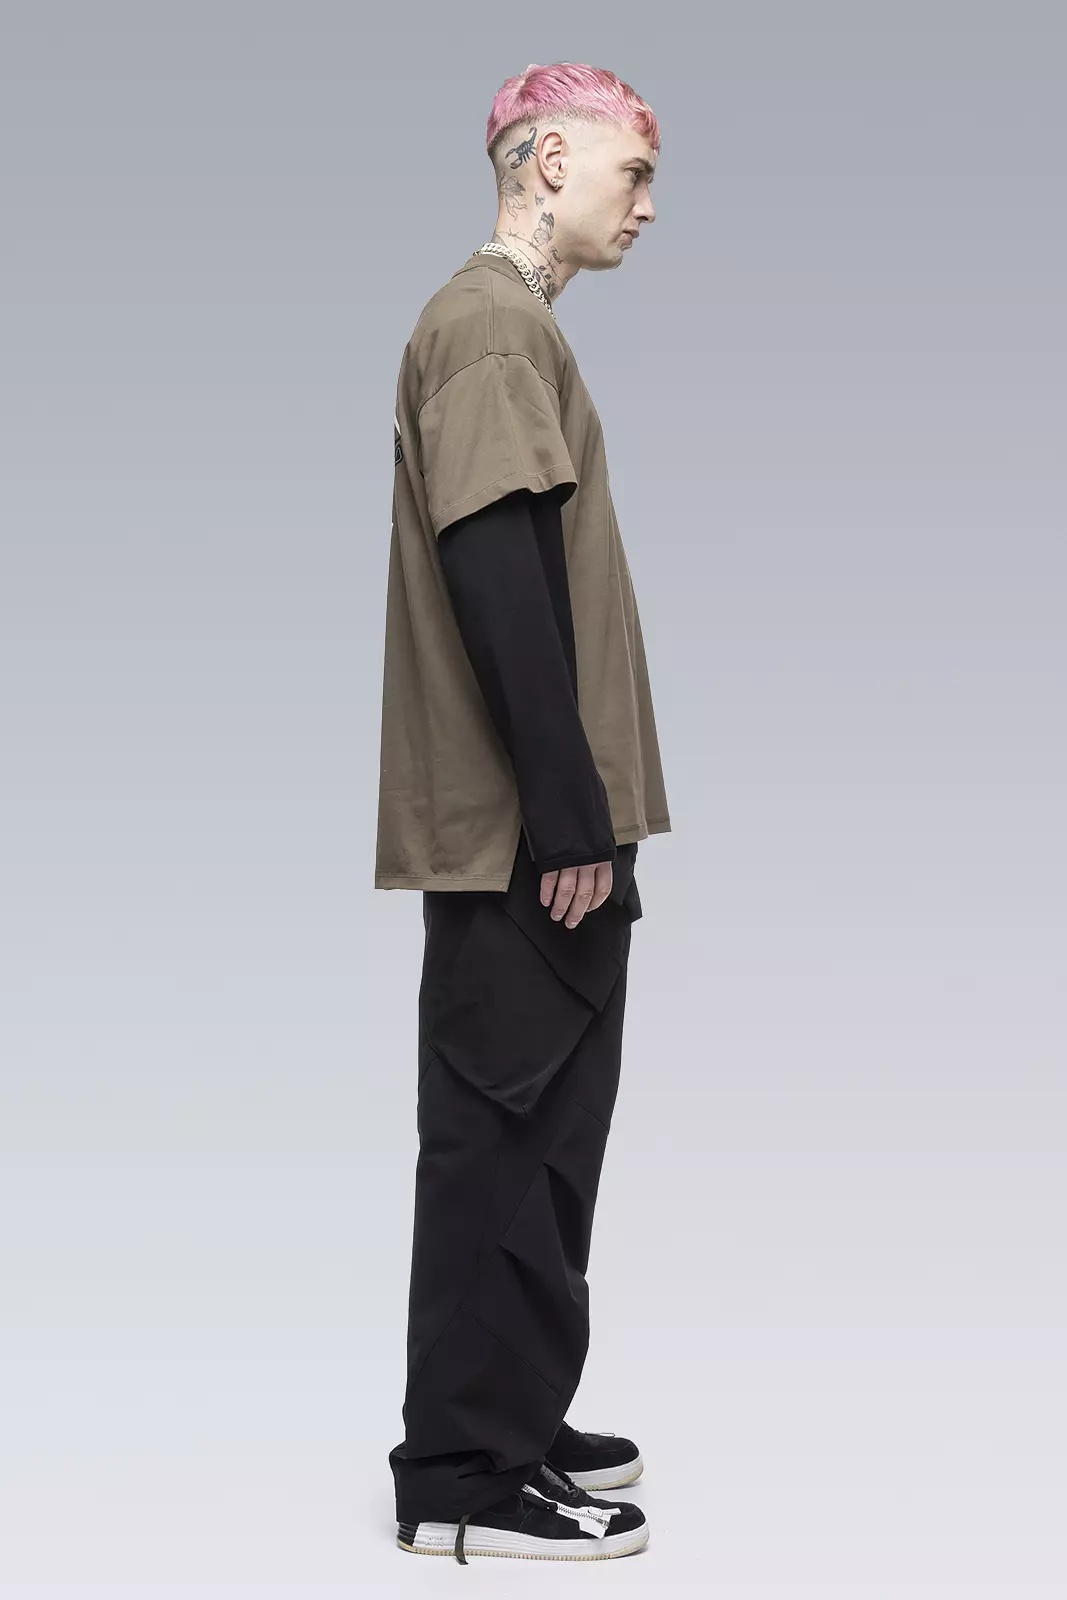 S29-PR-A 100% Organic Cotton Long Sleeve T-shirt Black - 4